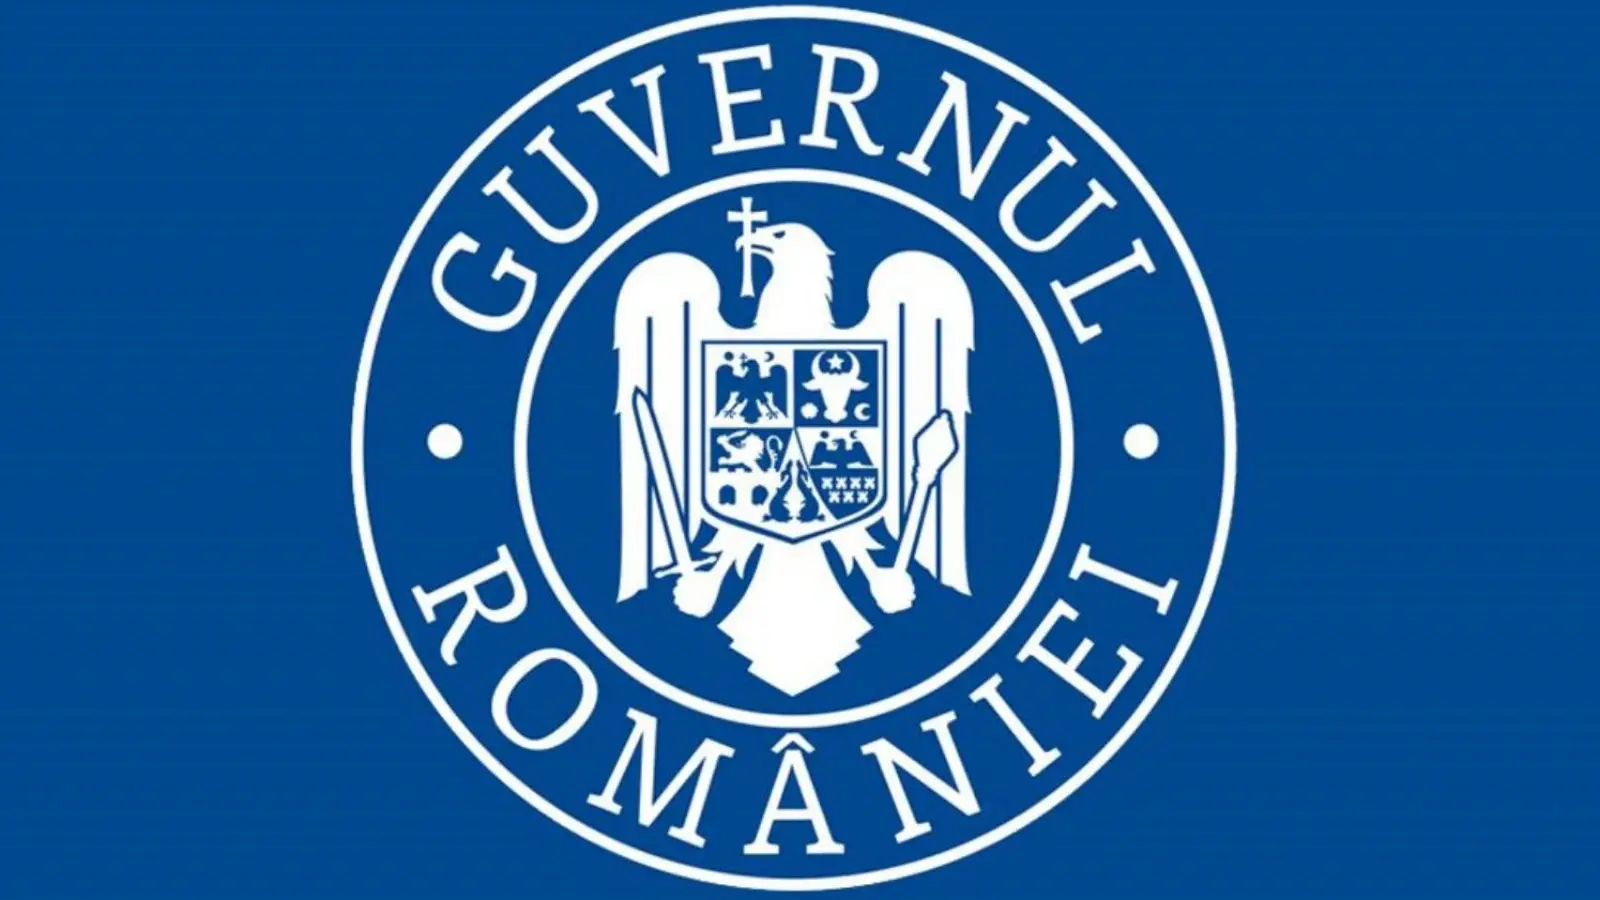 Prima Rectificare Bugetara din 2022 este Pozitiva, conform Guvernului Romaniei